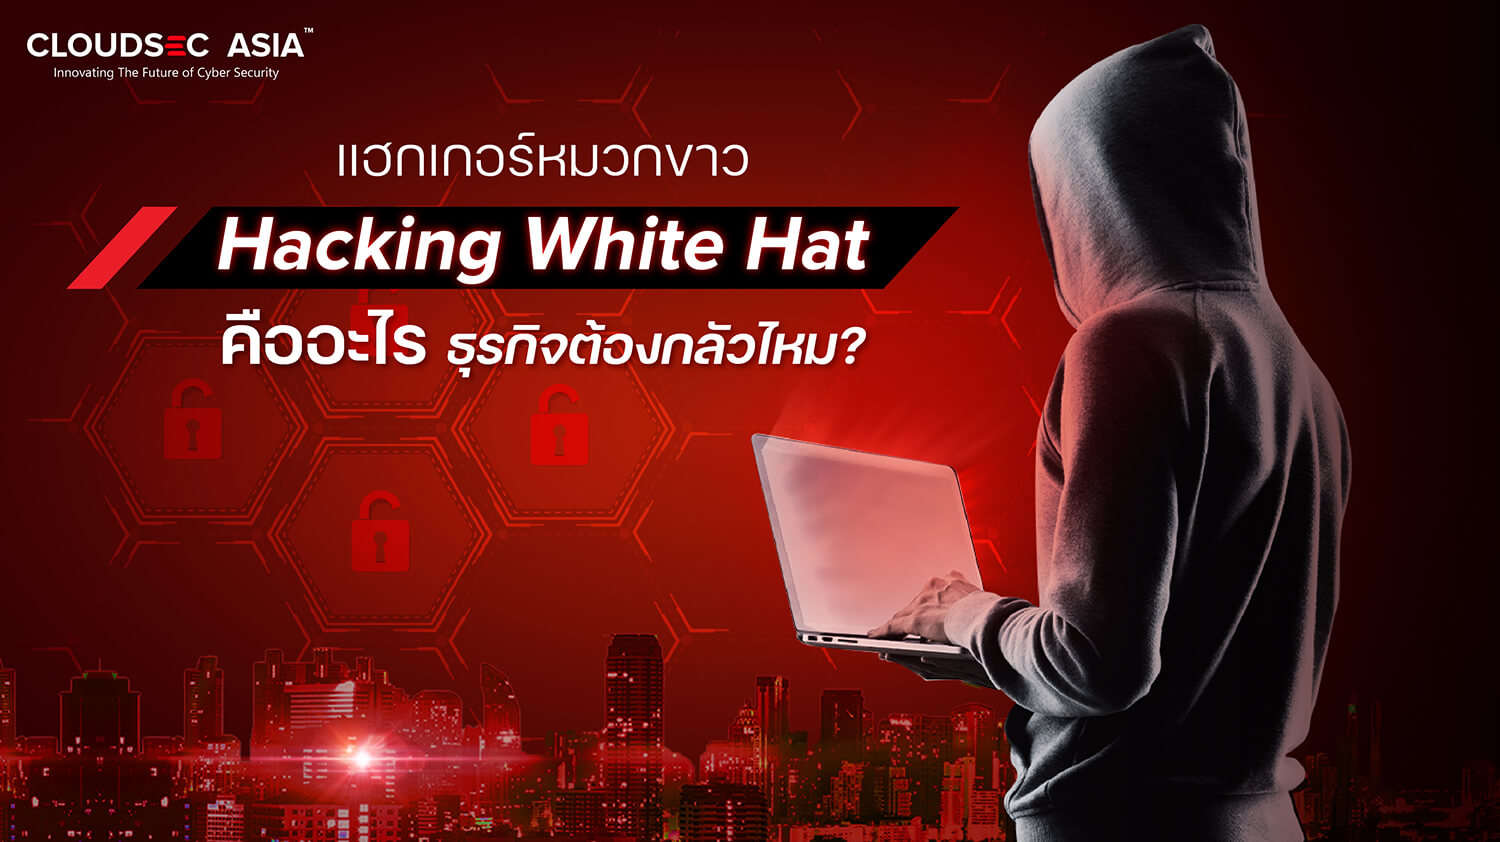 White hat hacker